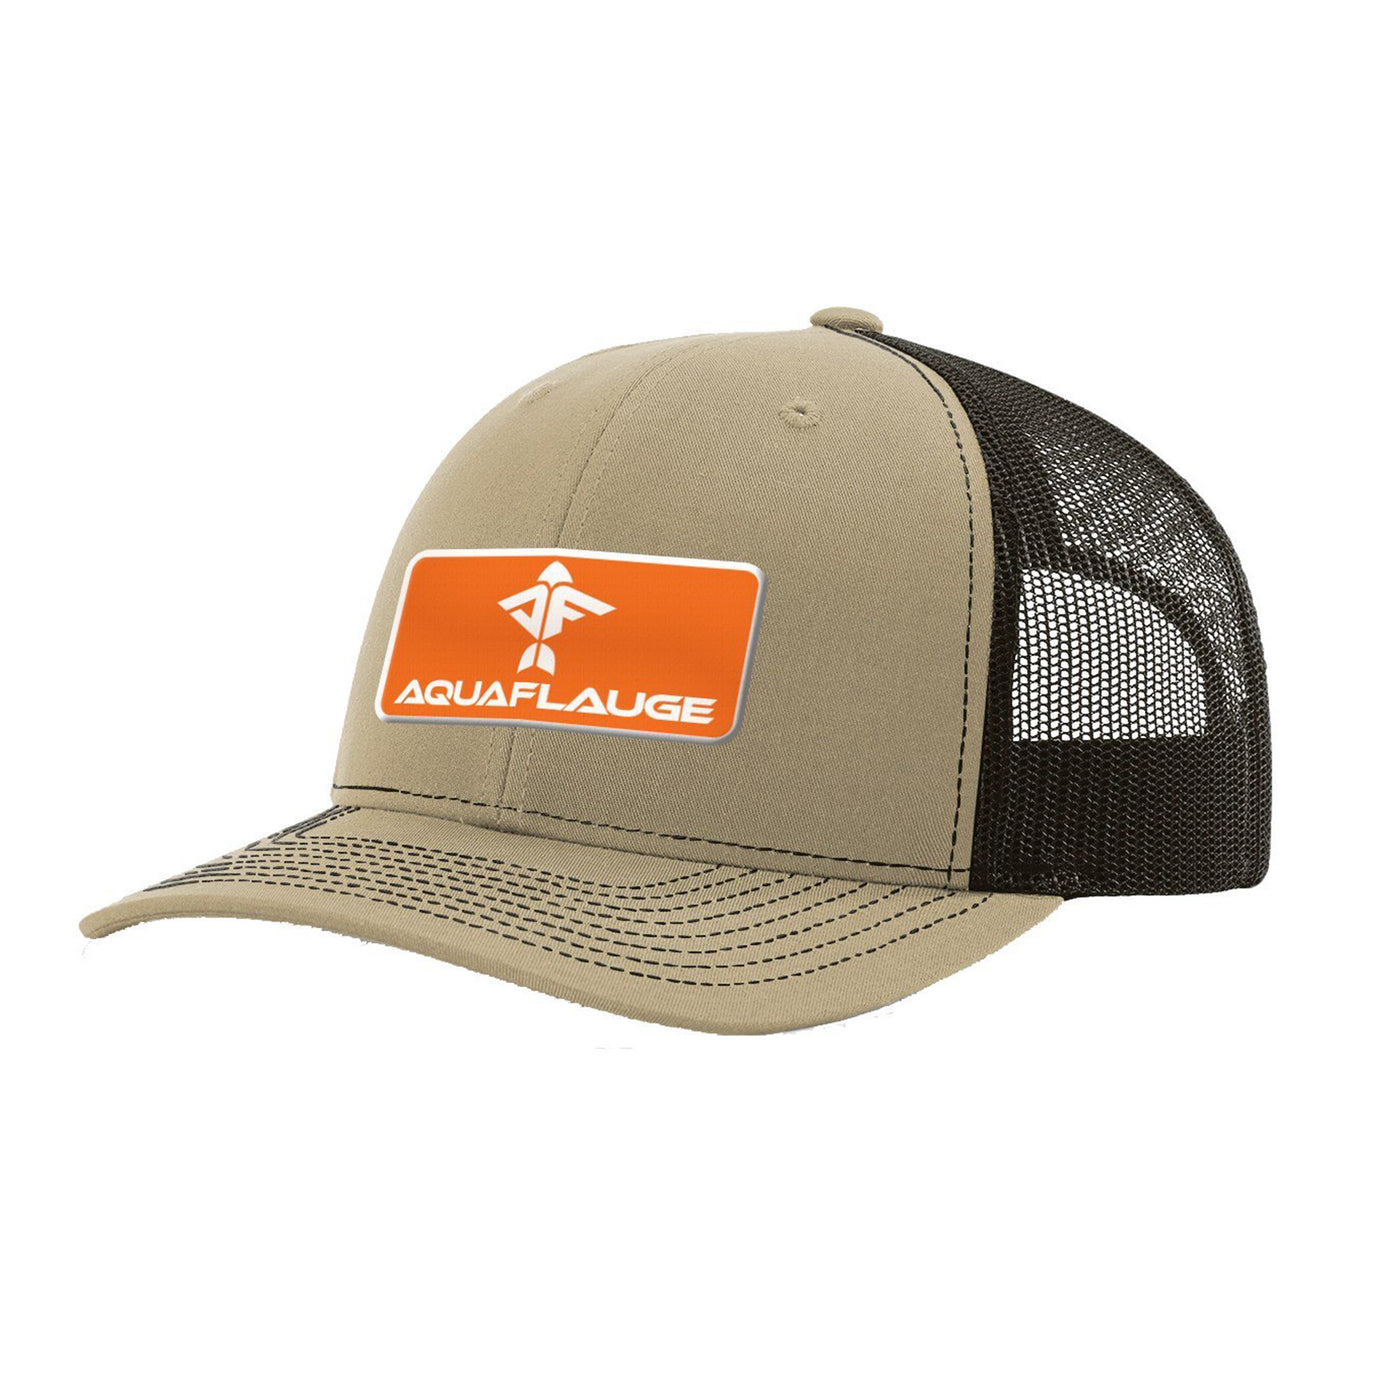 OG Orange Trucker Hat